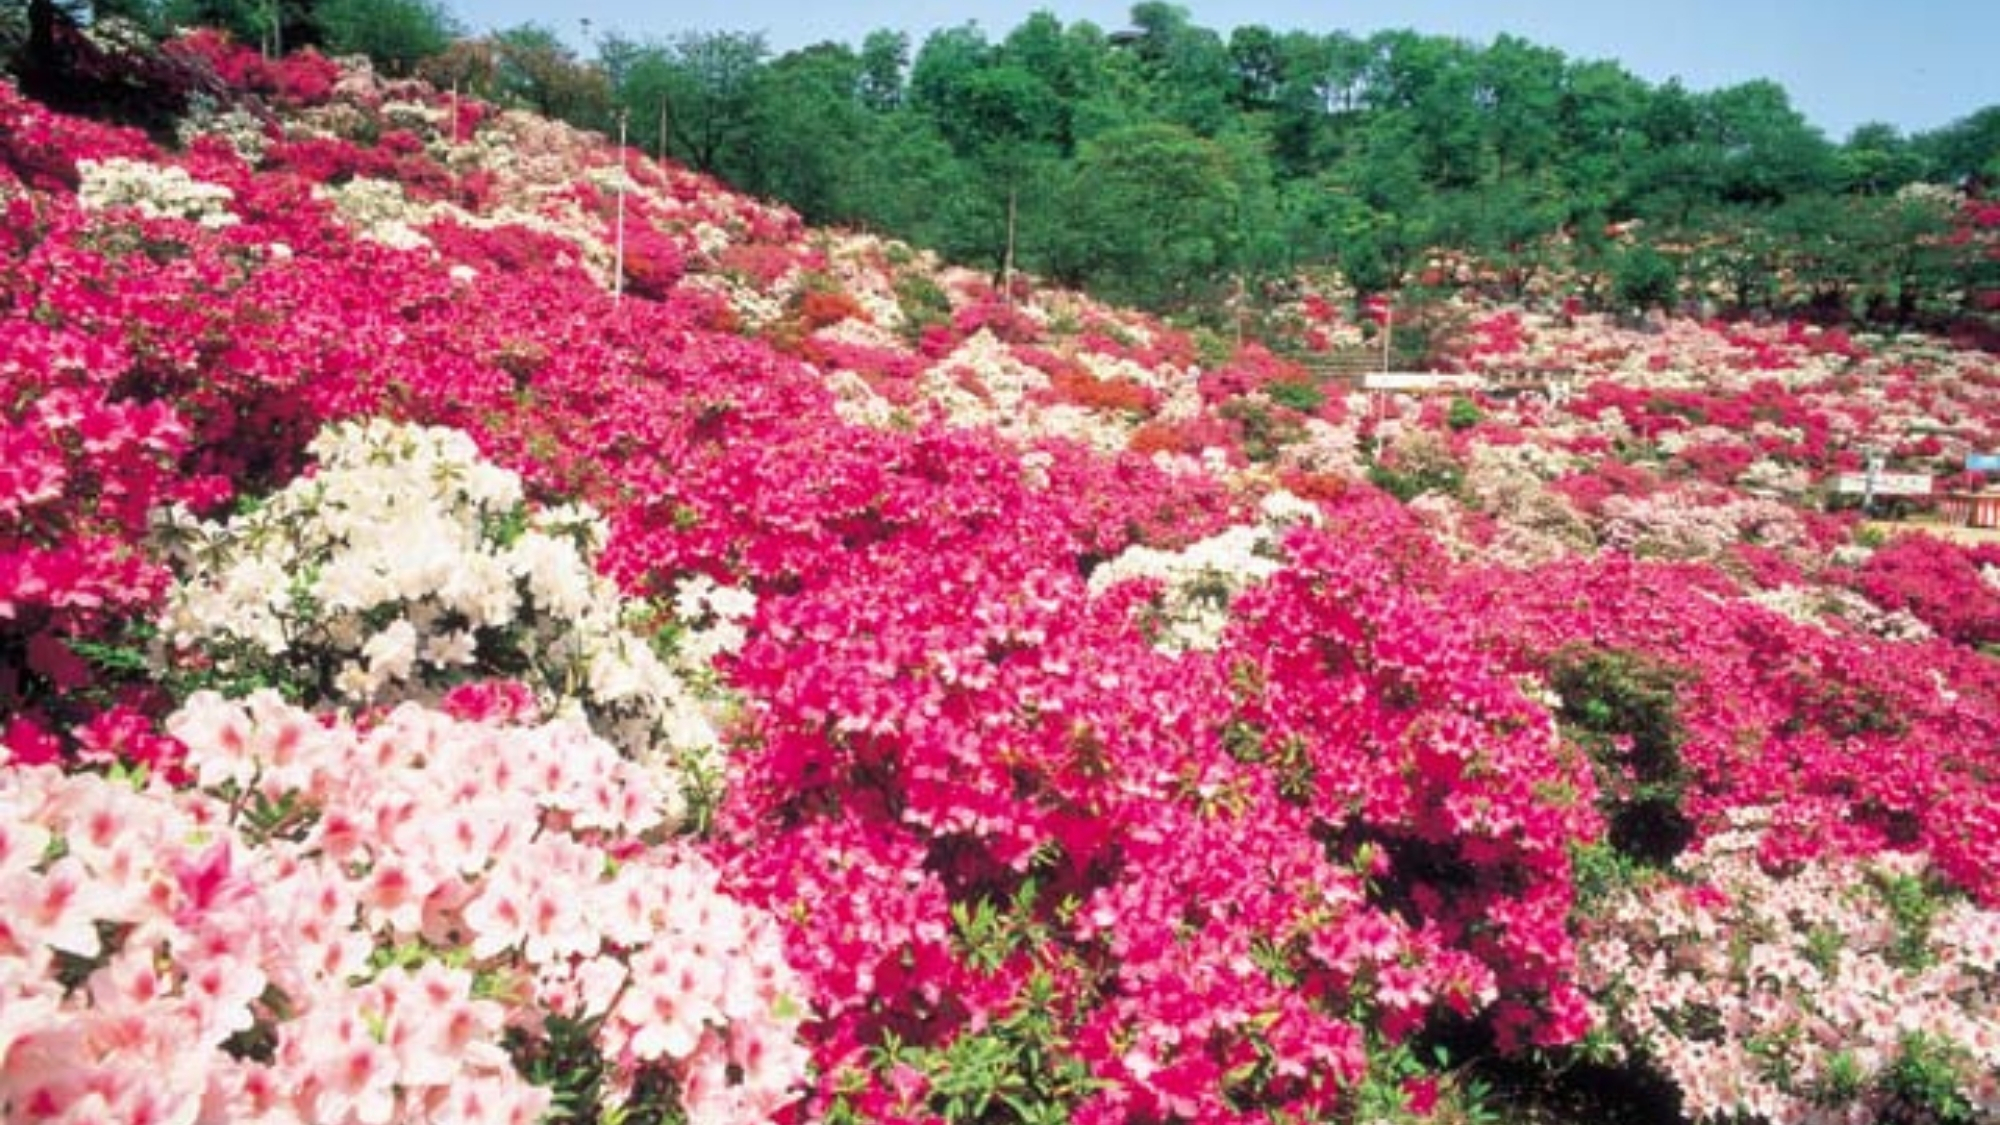 「西山公園」は、約5万株が咲き乱れる日本海側随一のつつじの名所。5月上旬につつじまつりが行われます。